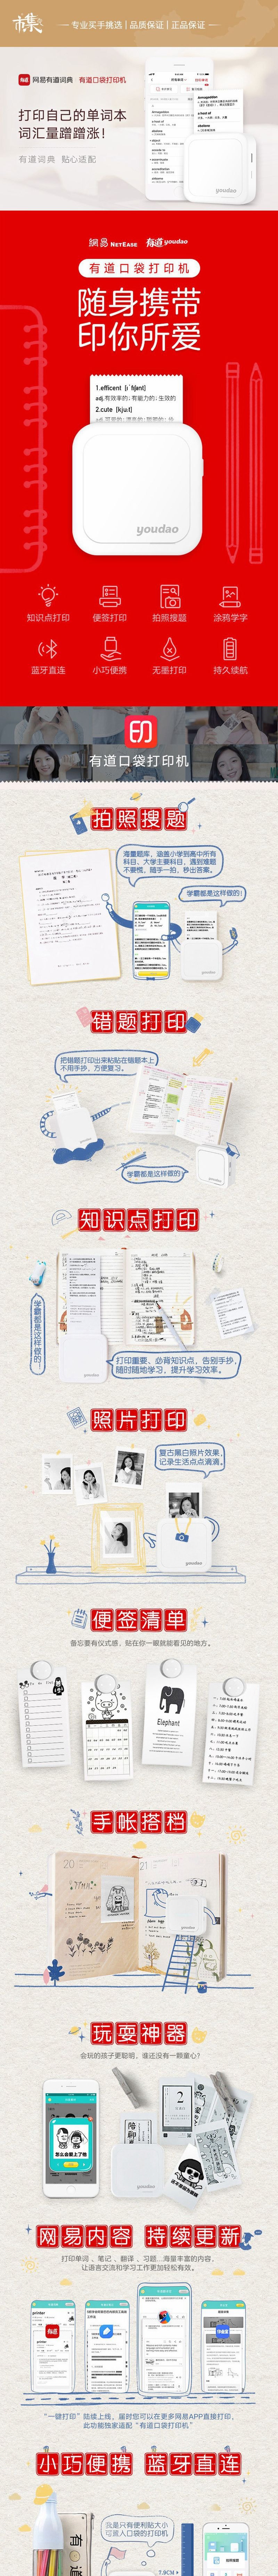 【香港DHL 5-7日达】网易智造 网易有道 口袋打印机 白色